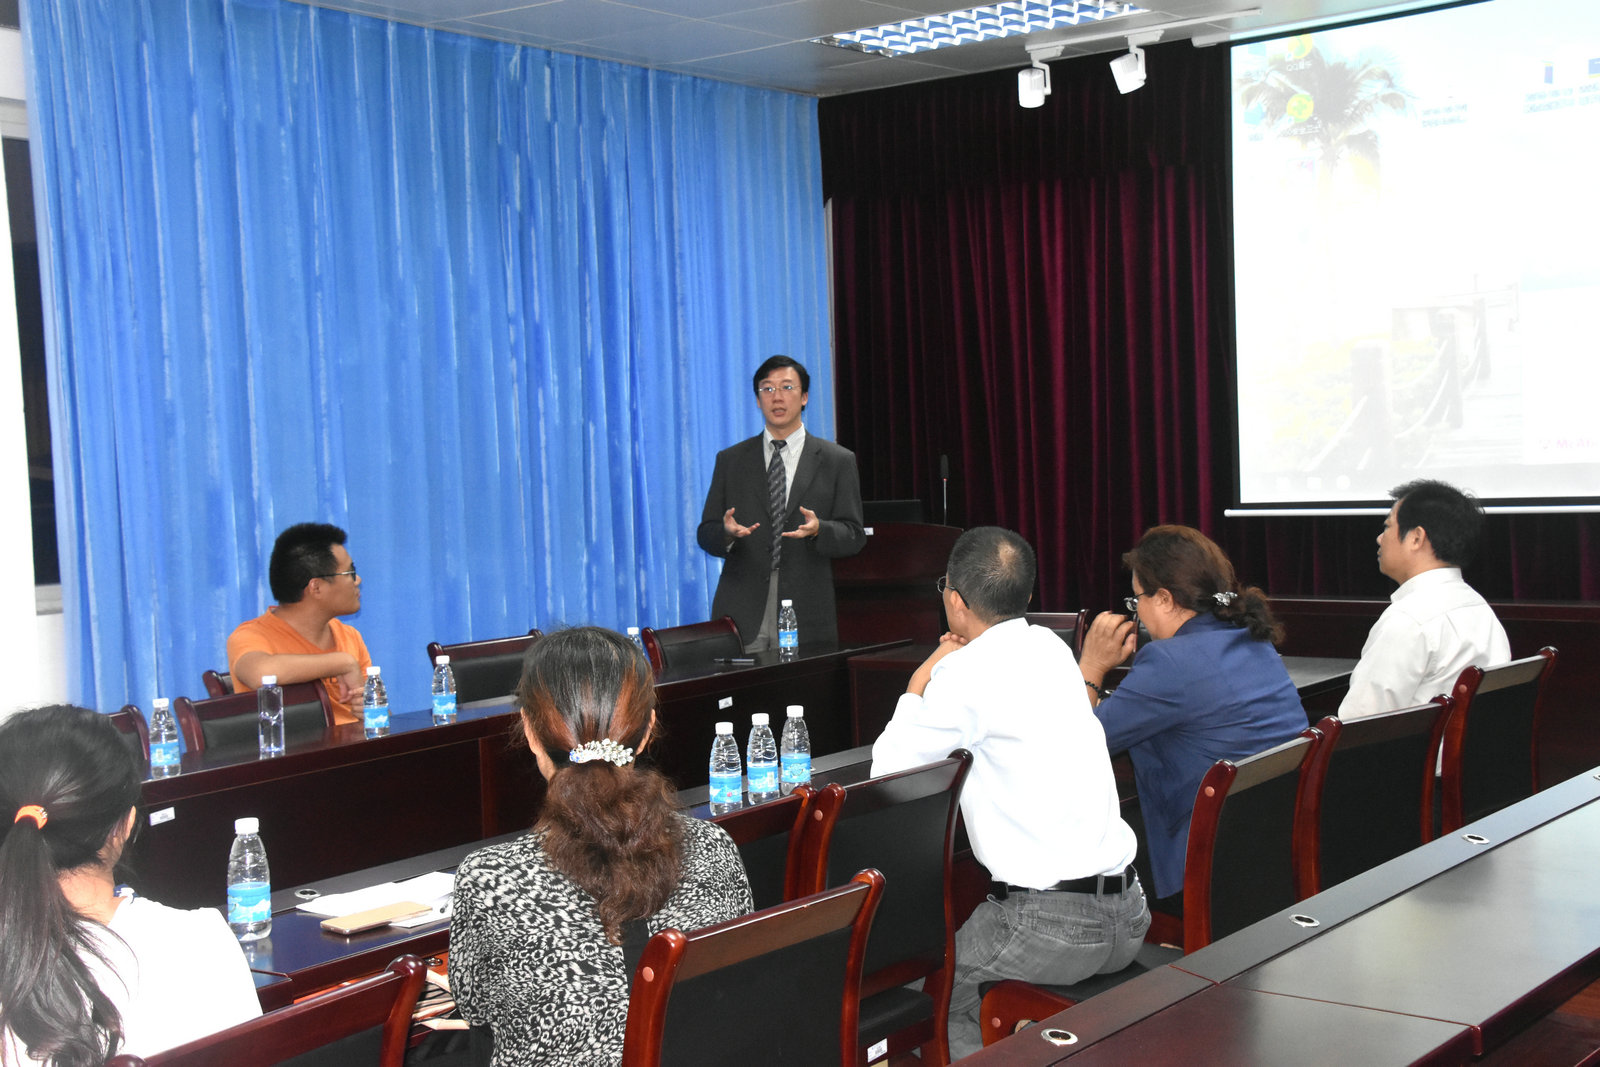 台湾中兴大学 王惠民教授在海洋与食品学院讲学